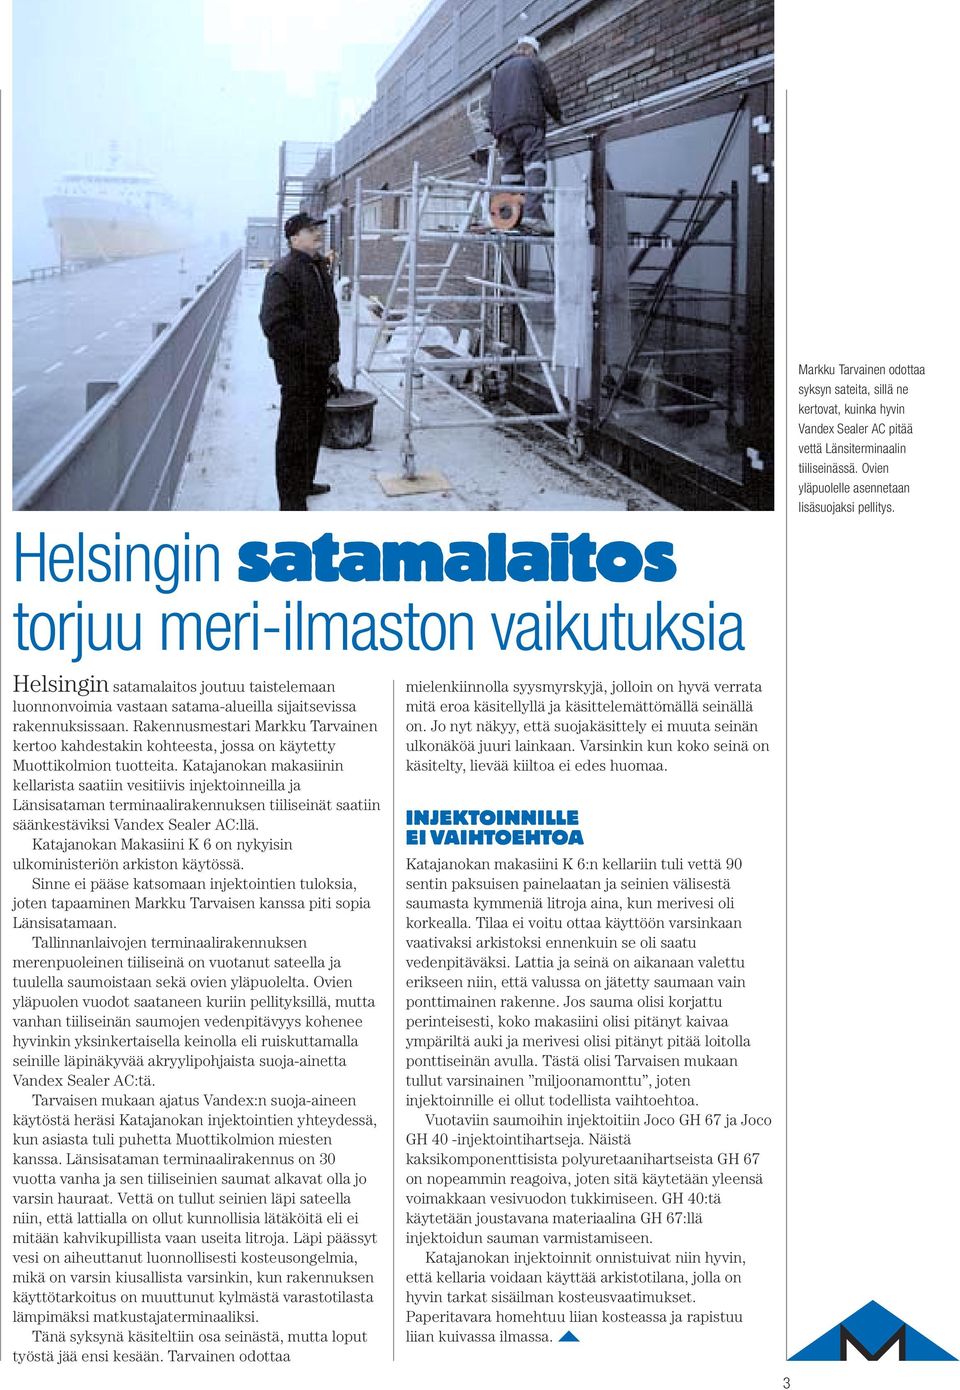 Rakennusmestari Markku Tarvainen kertoo kahdestakin kohteesta, jossa on käytetty Muottikolmion tuotteita.